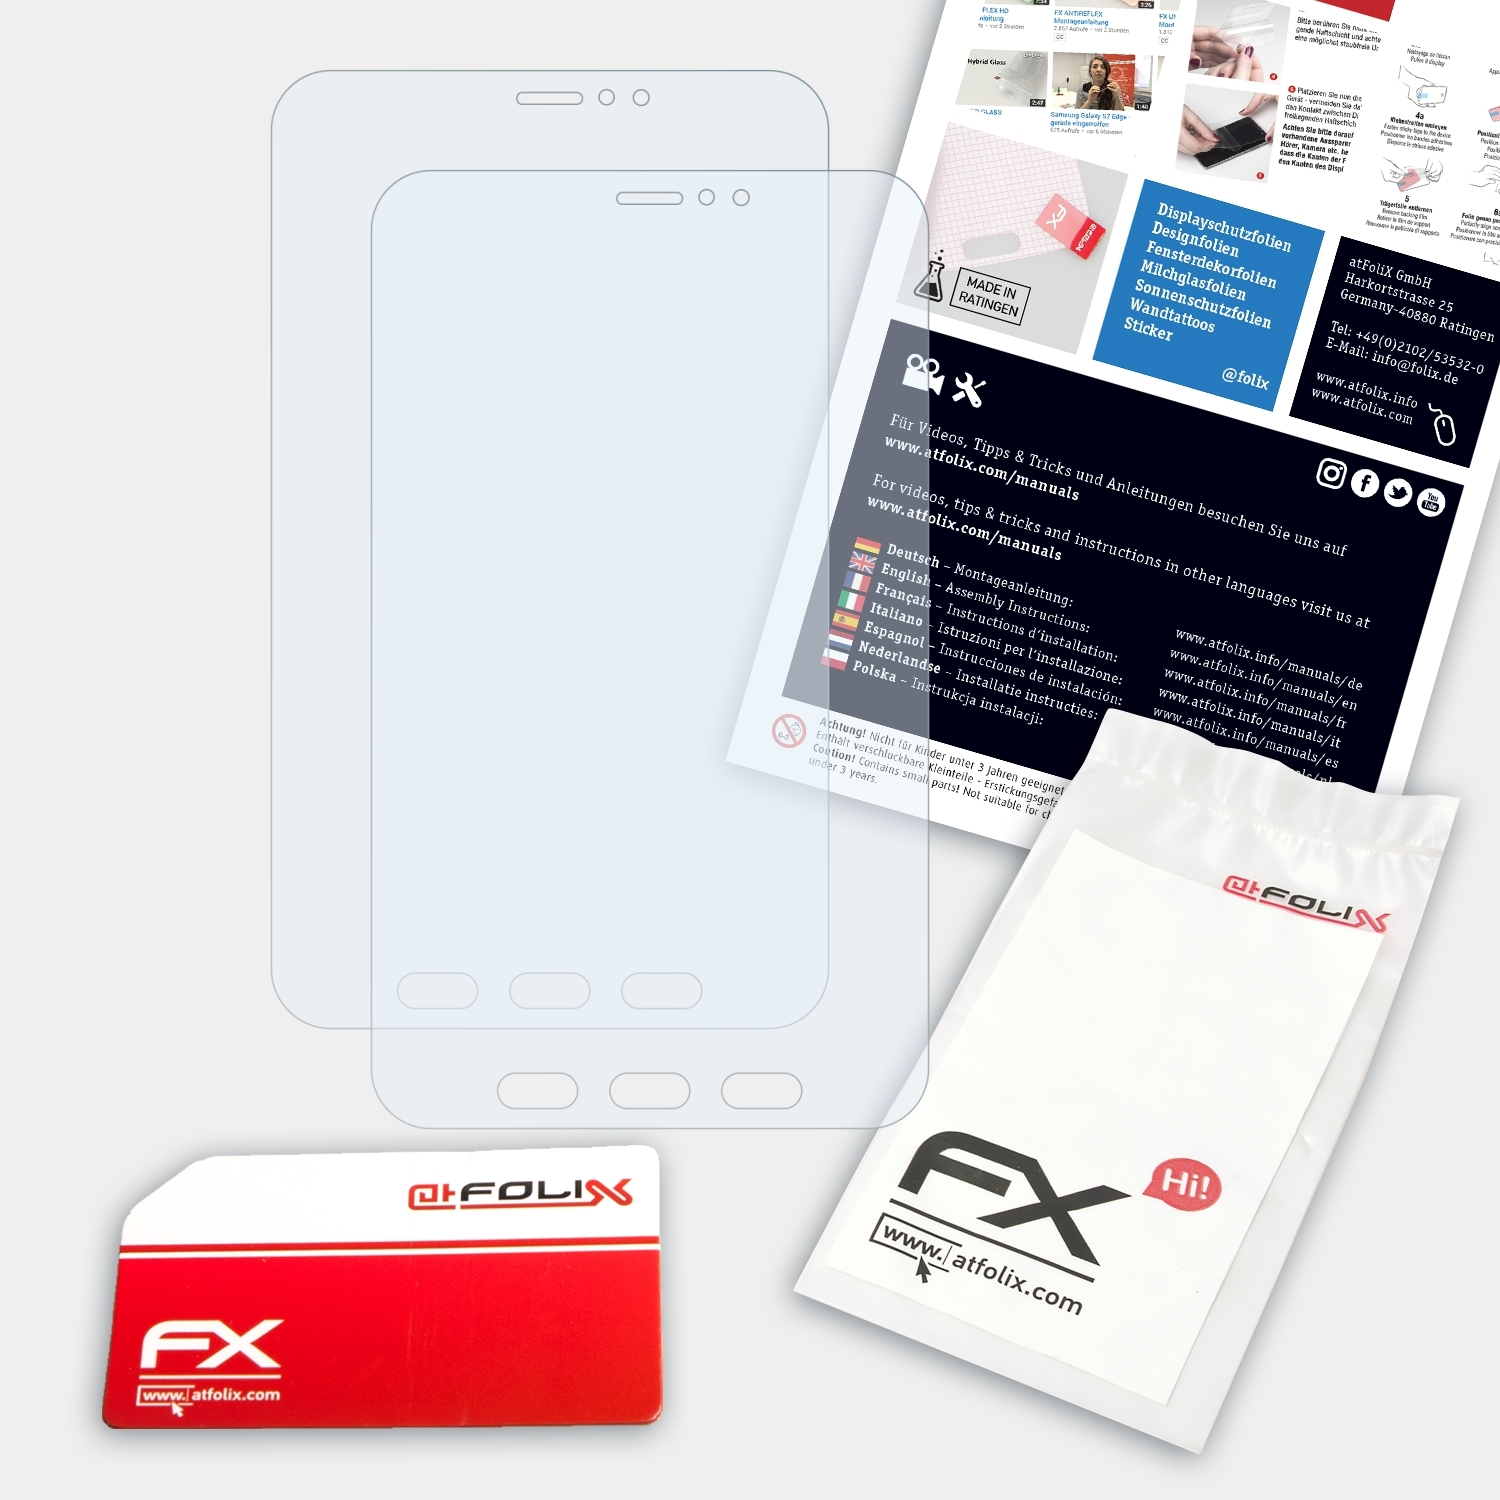 Displayschutz(für 2x FX-Clear ATFOLIX Samsung Galaxy Tab Active 2)